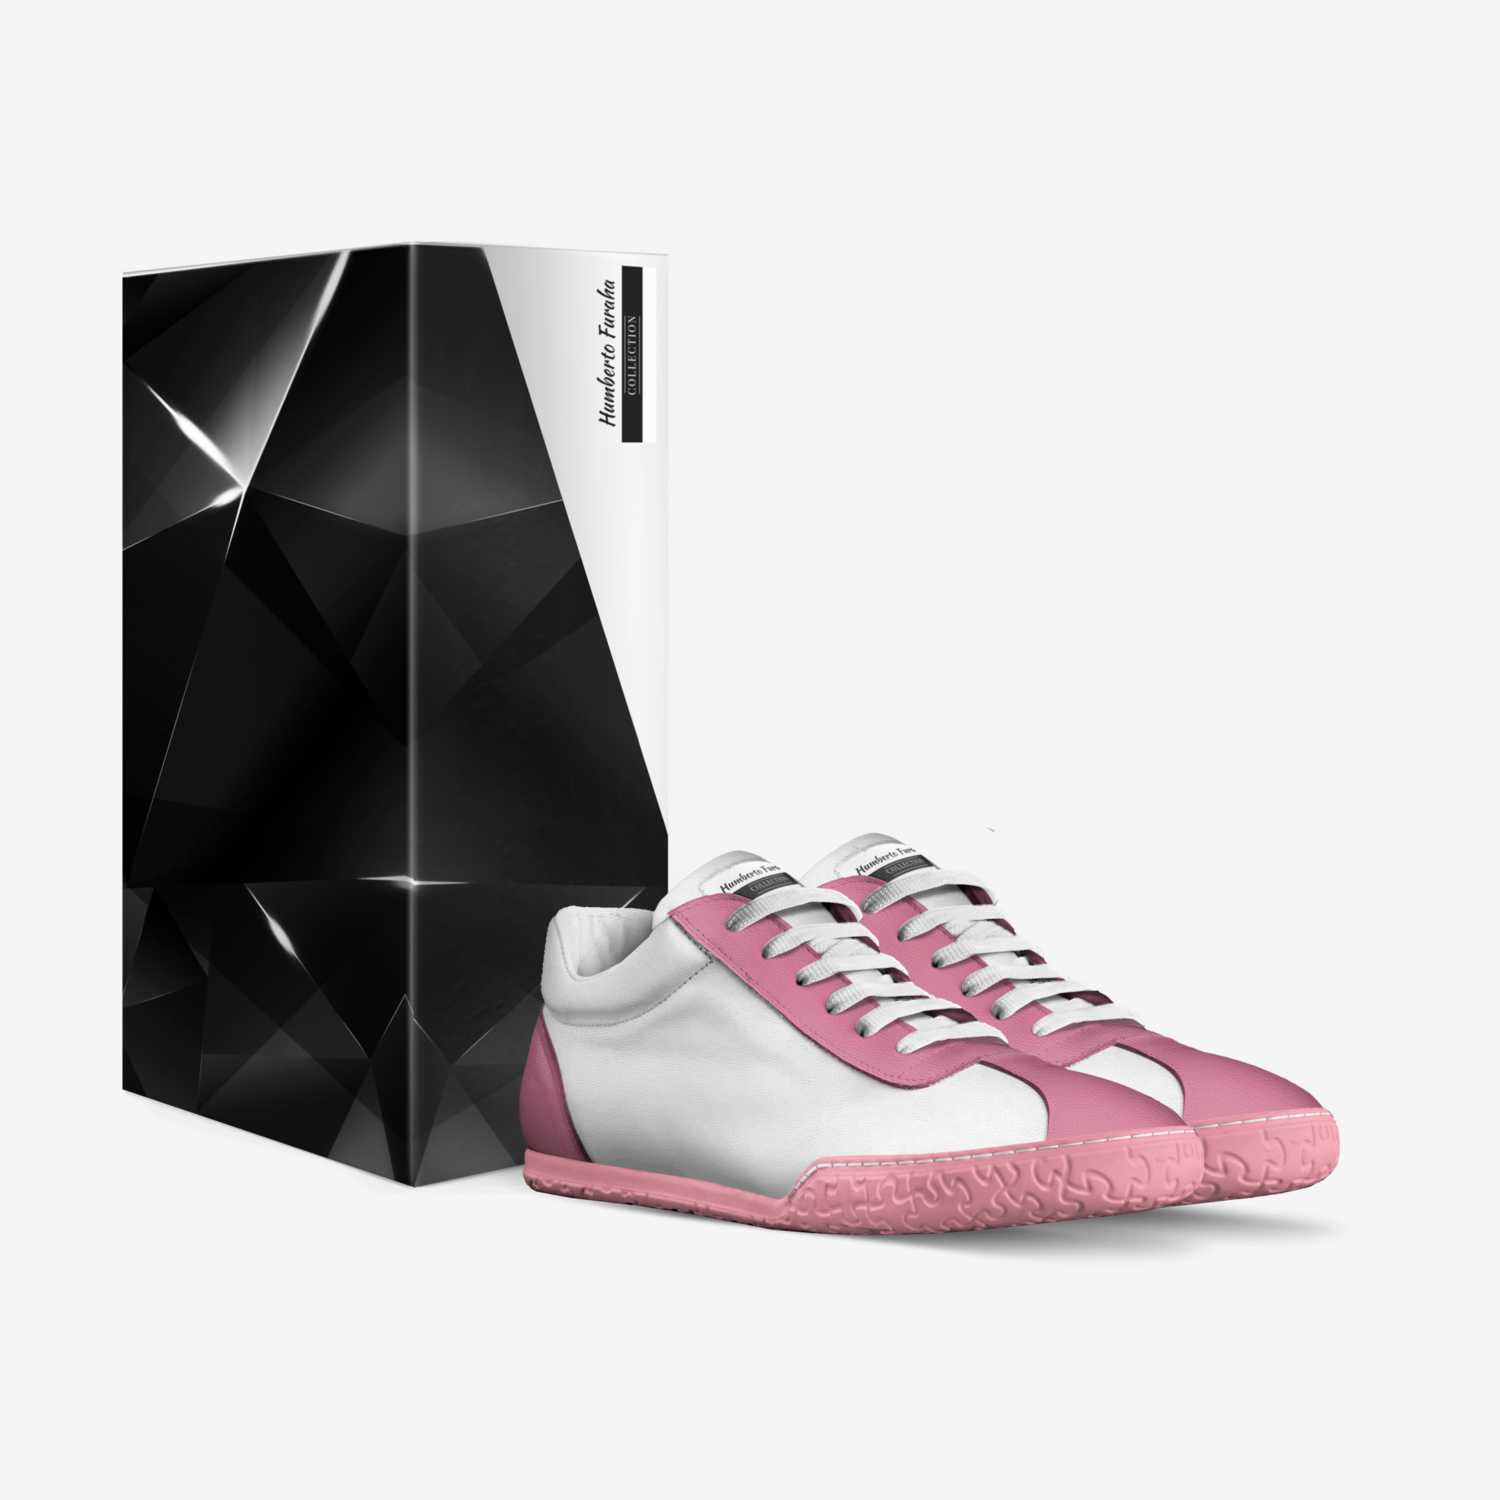 Humberto Furaha custom made in Italy shoes by Pamphyls Batila Batila | Box view